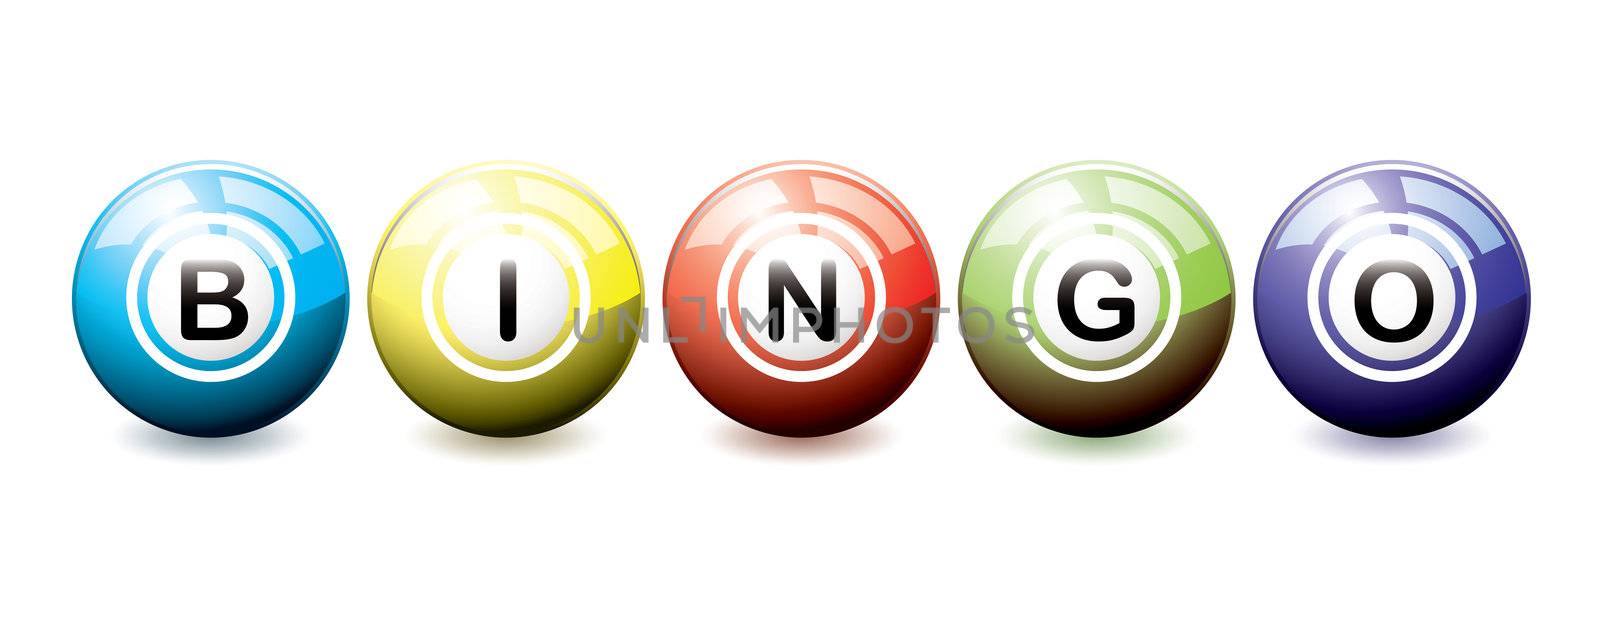 Bingo balls by nicemonkey